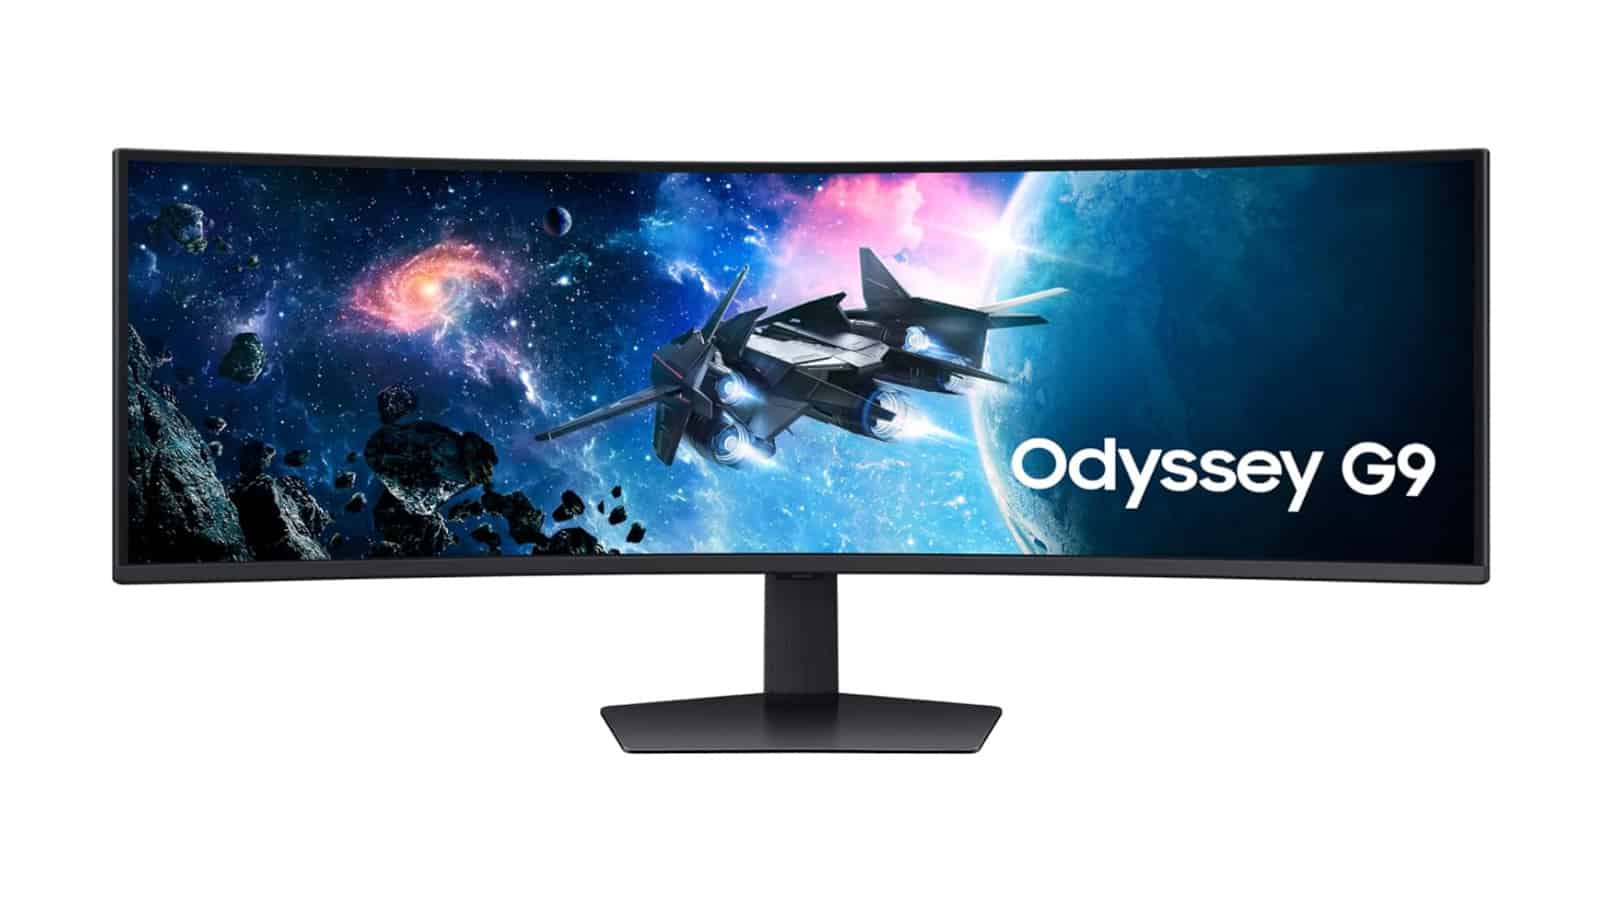 Consigue el monitor de juegos Samsung Odyssey G9 con un descuento de $ 200